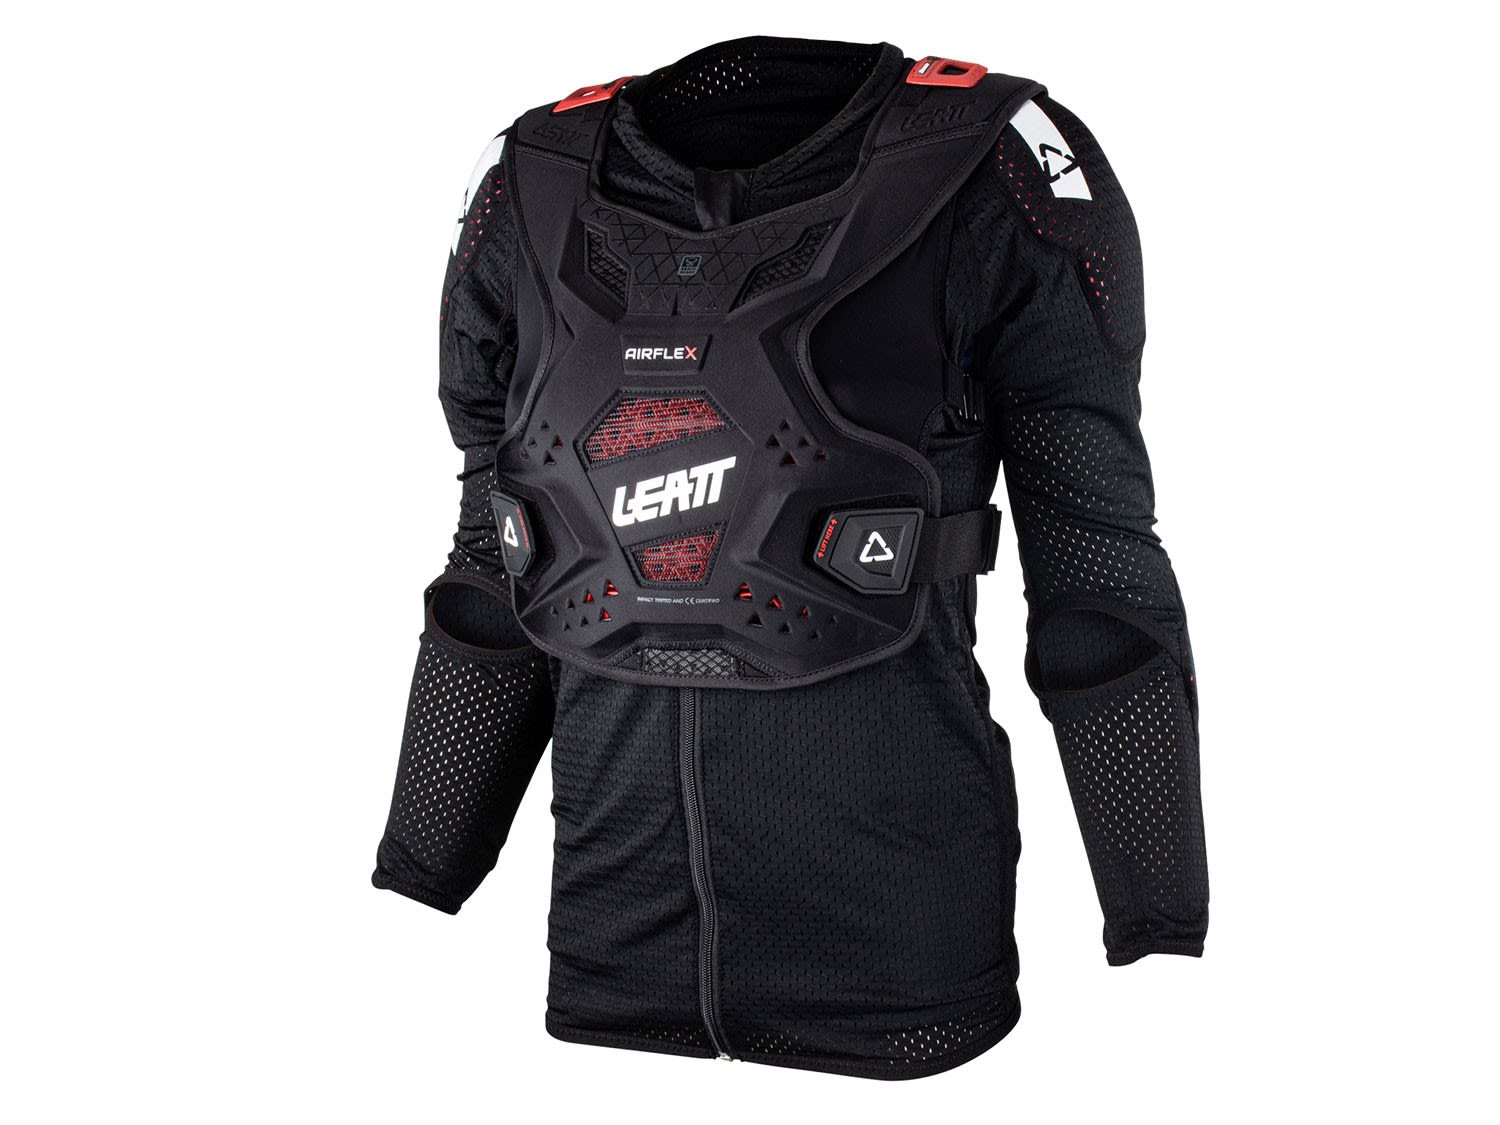 Leatt Body Protector Airflex Schwarz- Female Oberkrperprotektoren- Grsse XXS - Farbe Black unter Leatt